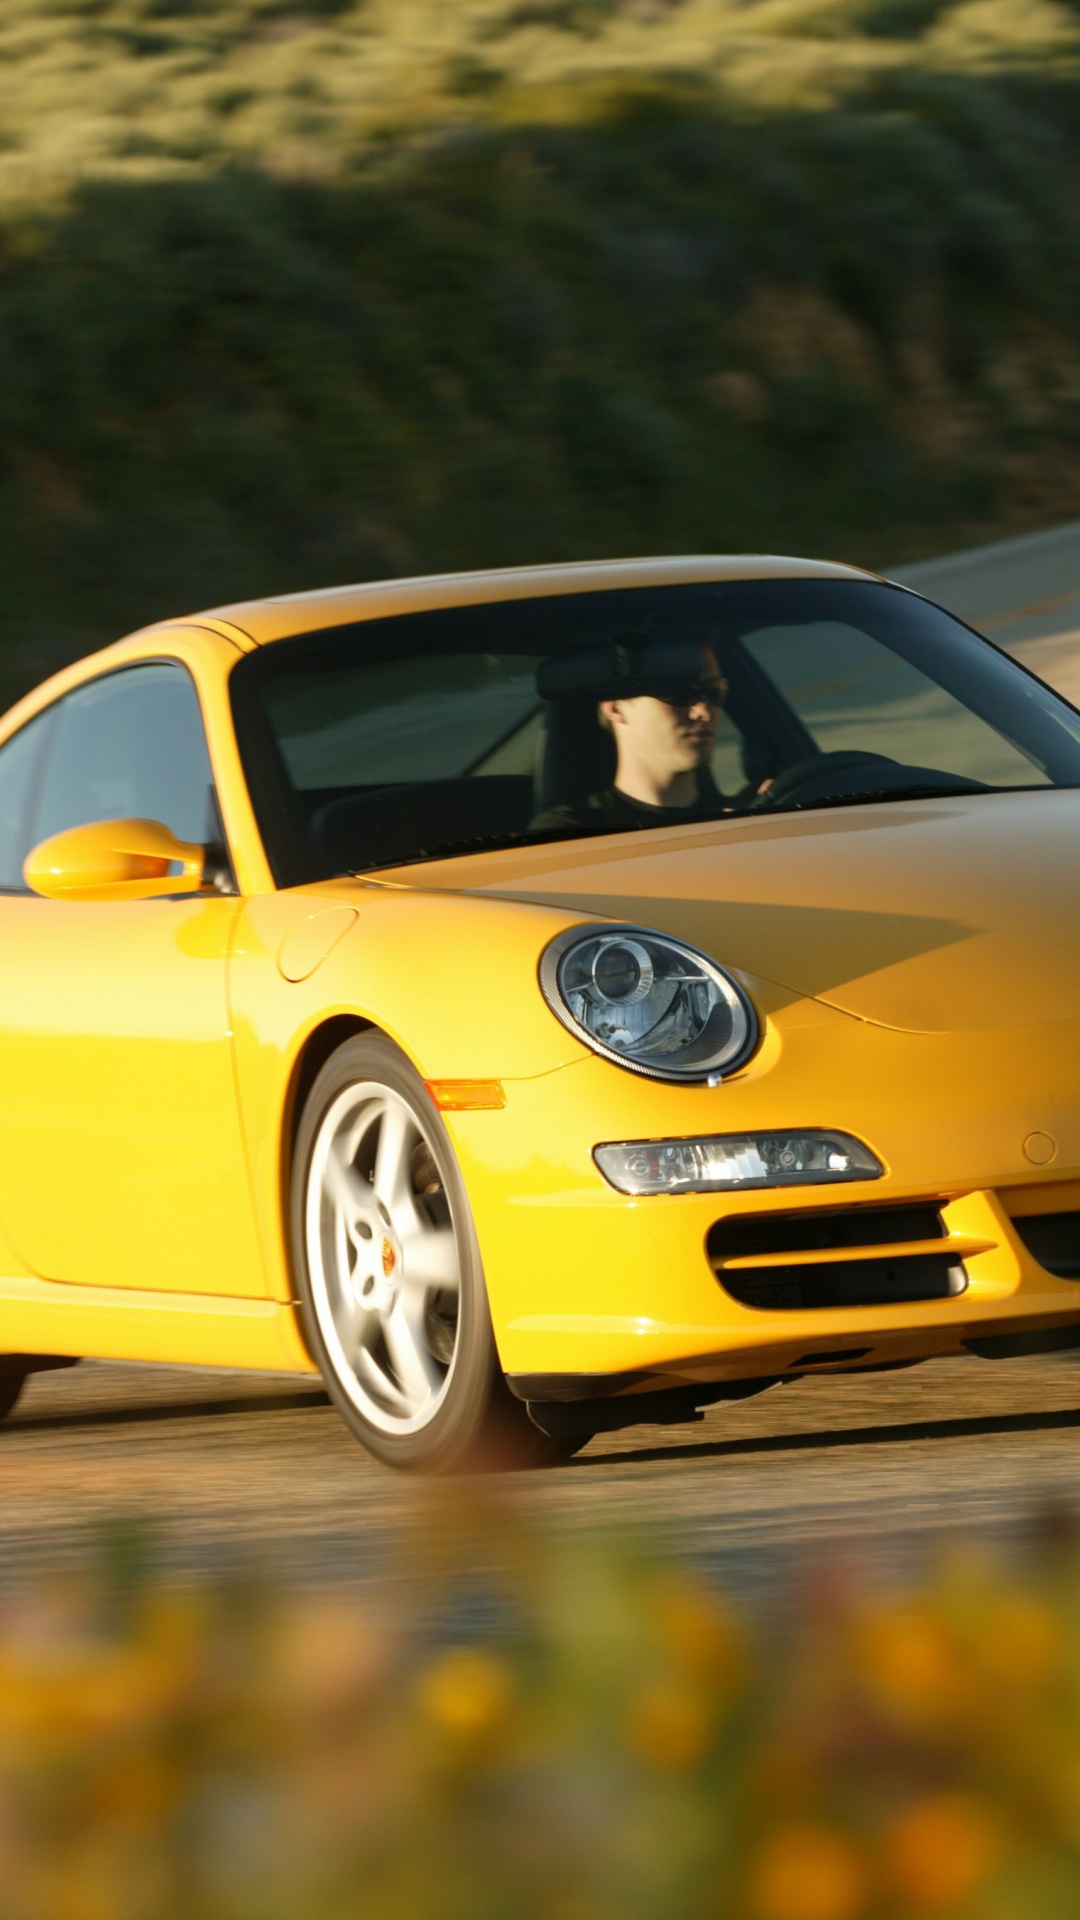 Porsche 911 Amarillo en la Carretera Durante el Día. Wallpaper in 1080x1920 Resolution